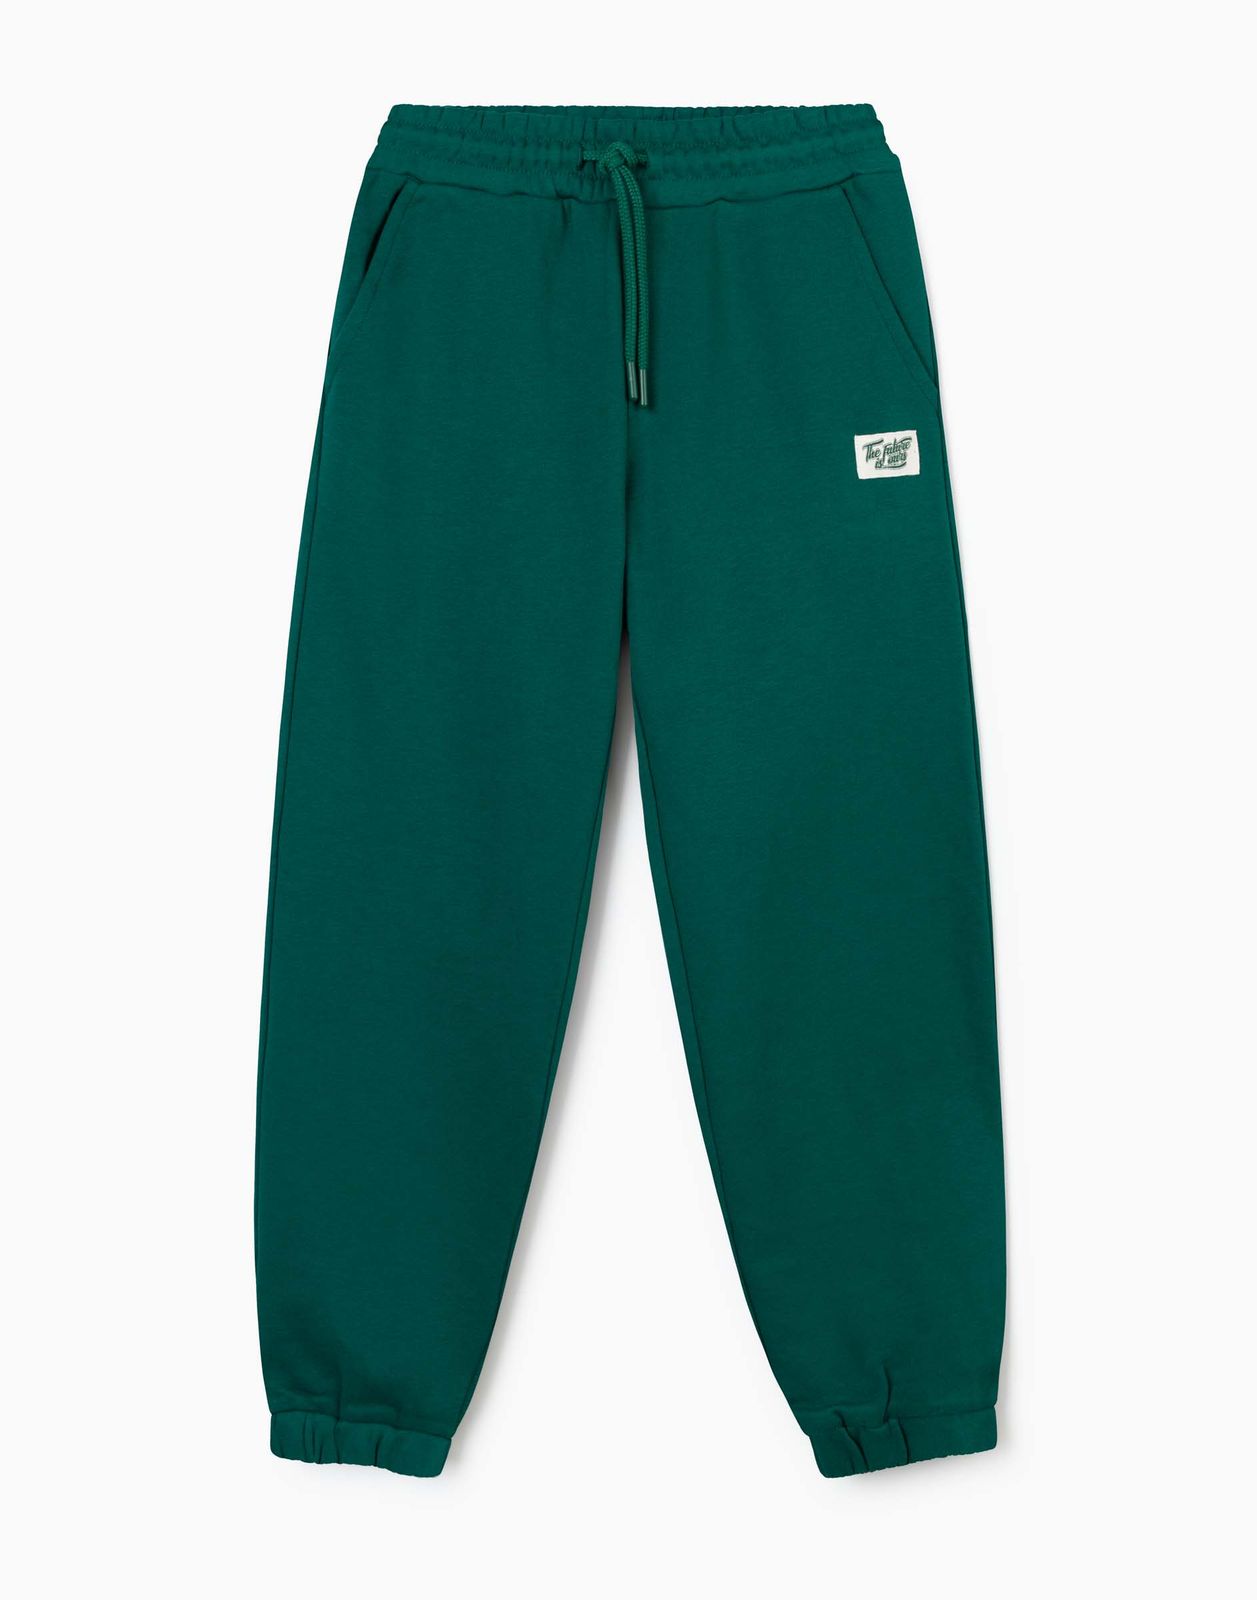 Спортивные брюки для мальчика Gloria Jeans BAC012732 темно-зеленый 6-8л/128 брюки для мальчиков джоггеры темно синие с печатью